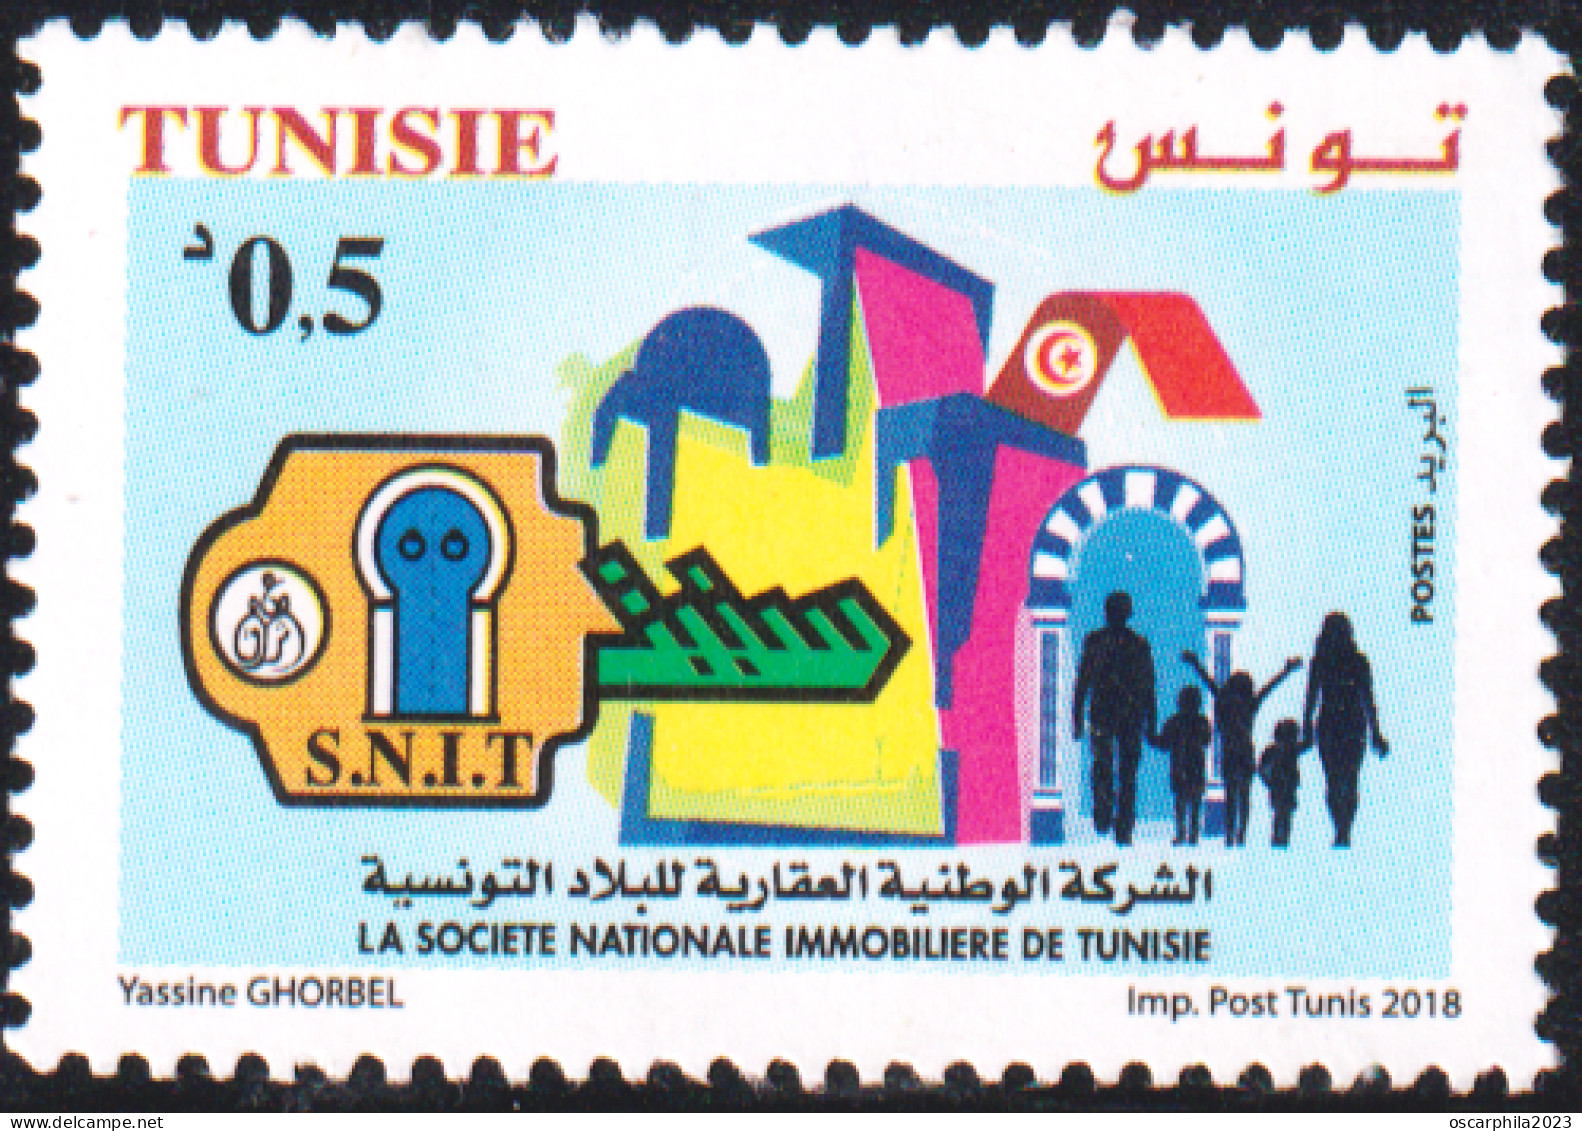 2018 -Tunisie-Société Nationale Immobilière De Tunisie “SNIT” Le Droit à Un Logement Décent- 1V -MNH***** - Tunisia